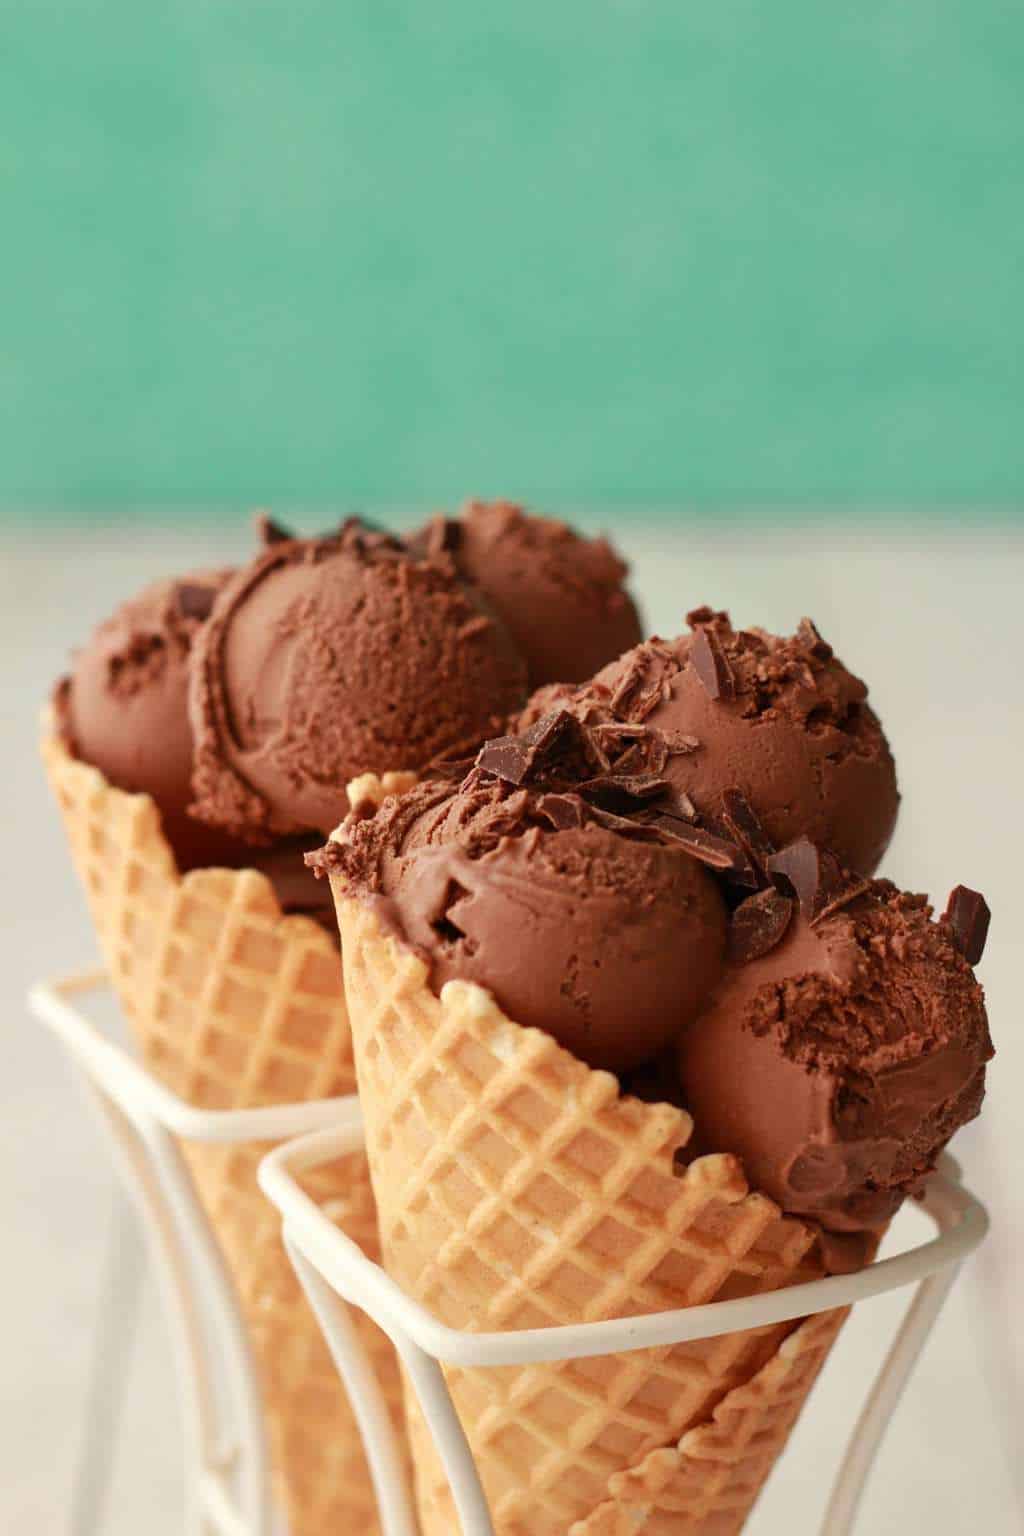 Chocolate ice cream in sugar cones. 